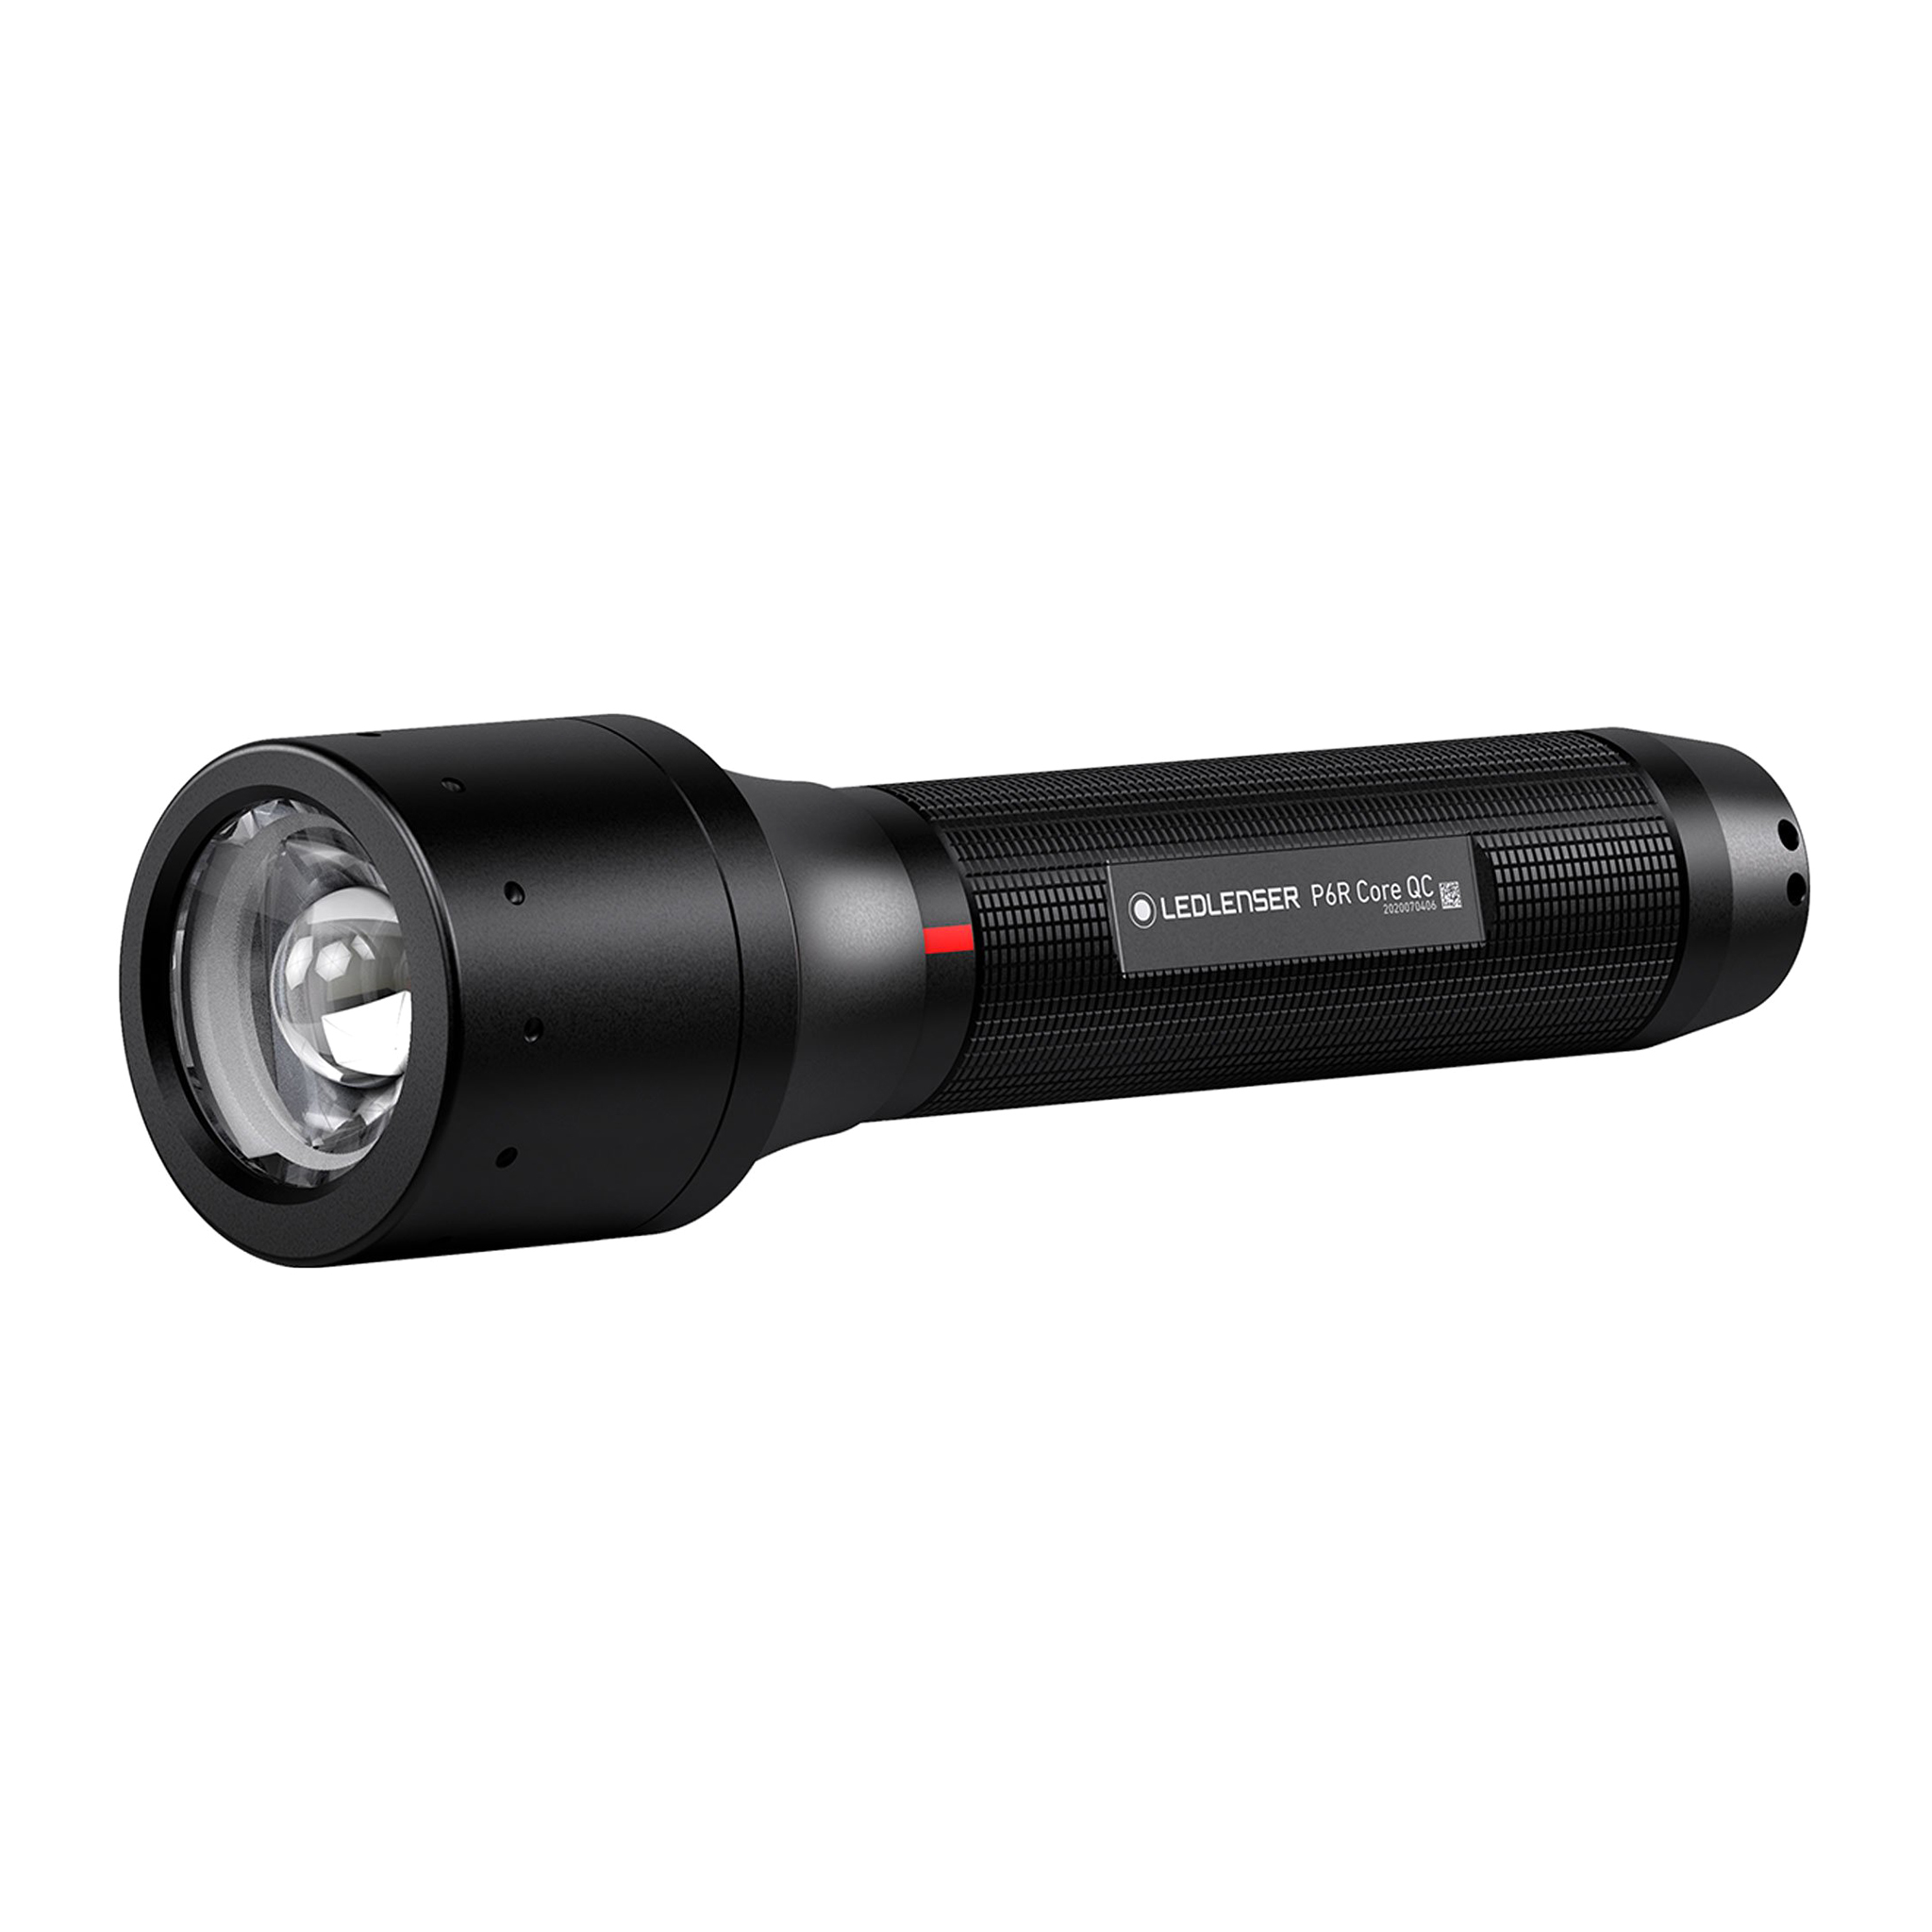 Ficklampa LED Lenser P6R Core QC, 270 lm